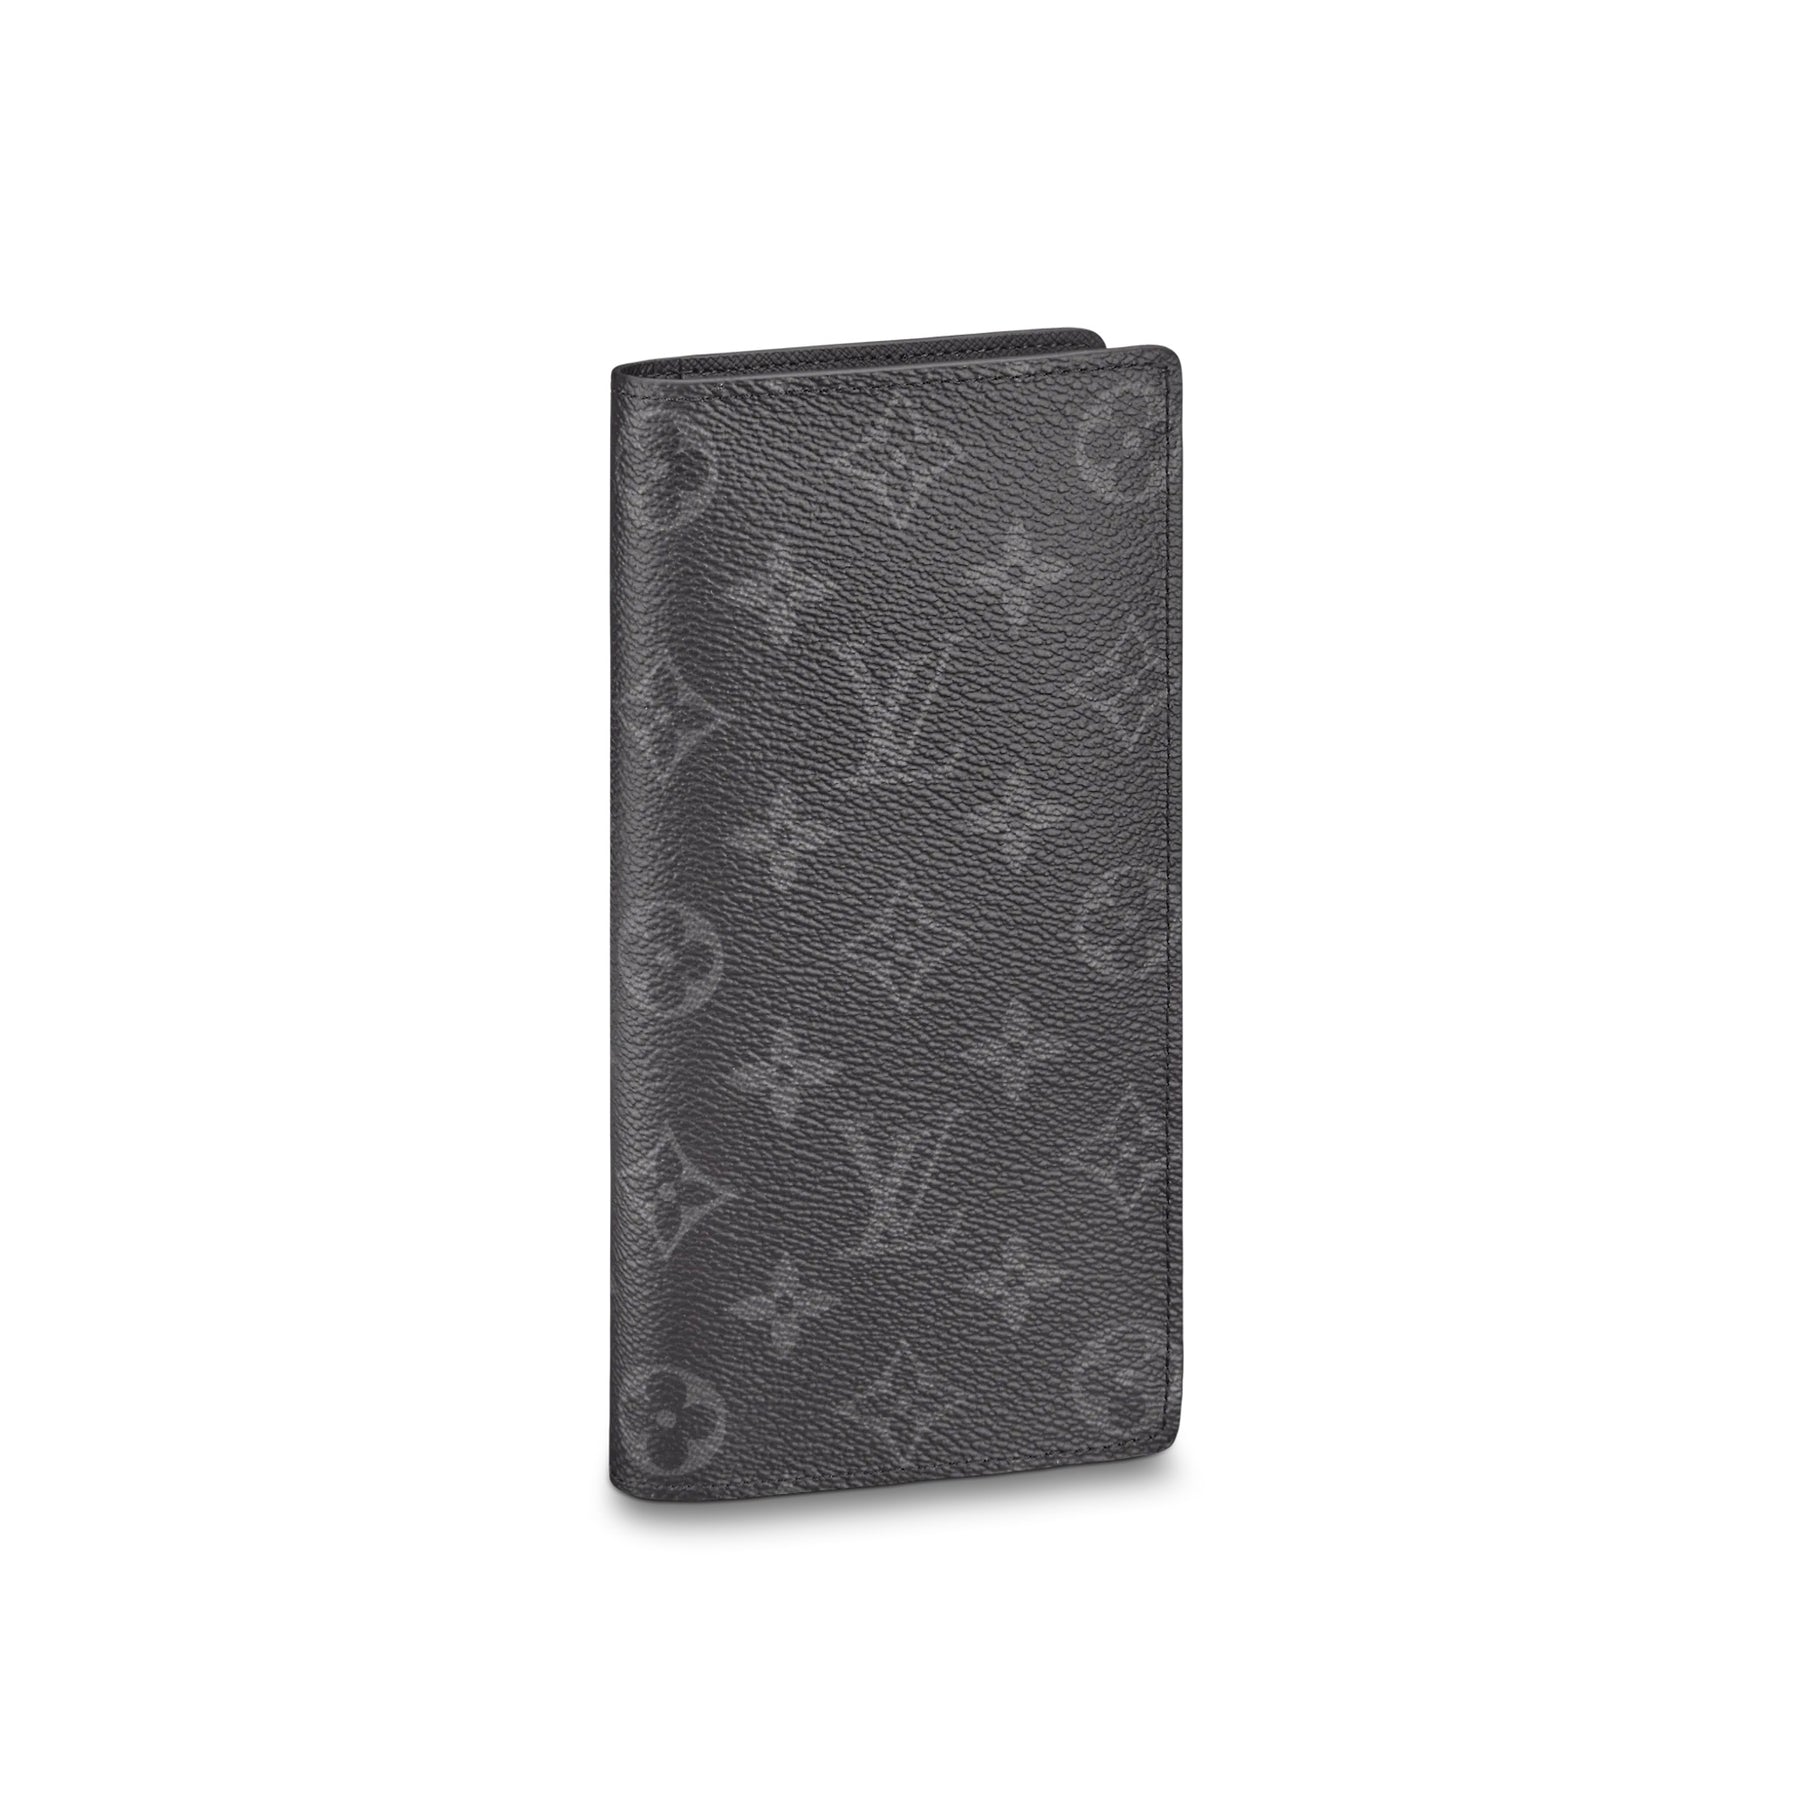 Louis Vuitton Monogram Eclipse Brazza Wallet Authentic 